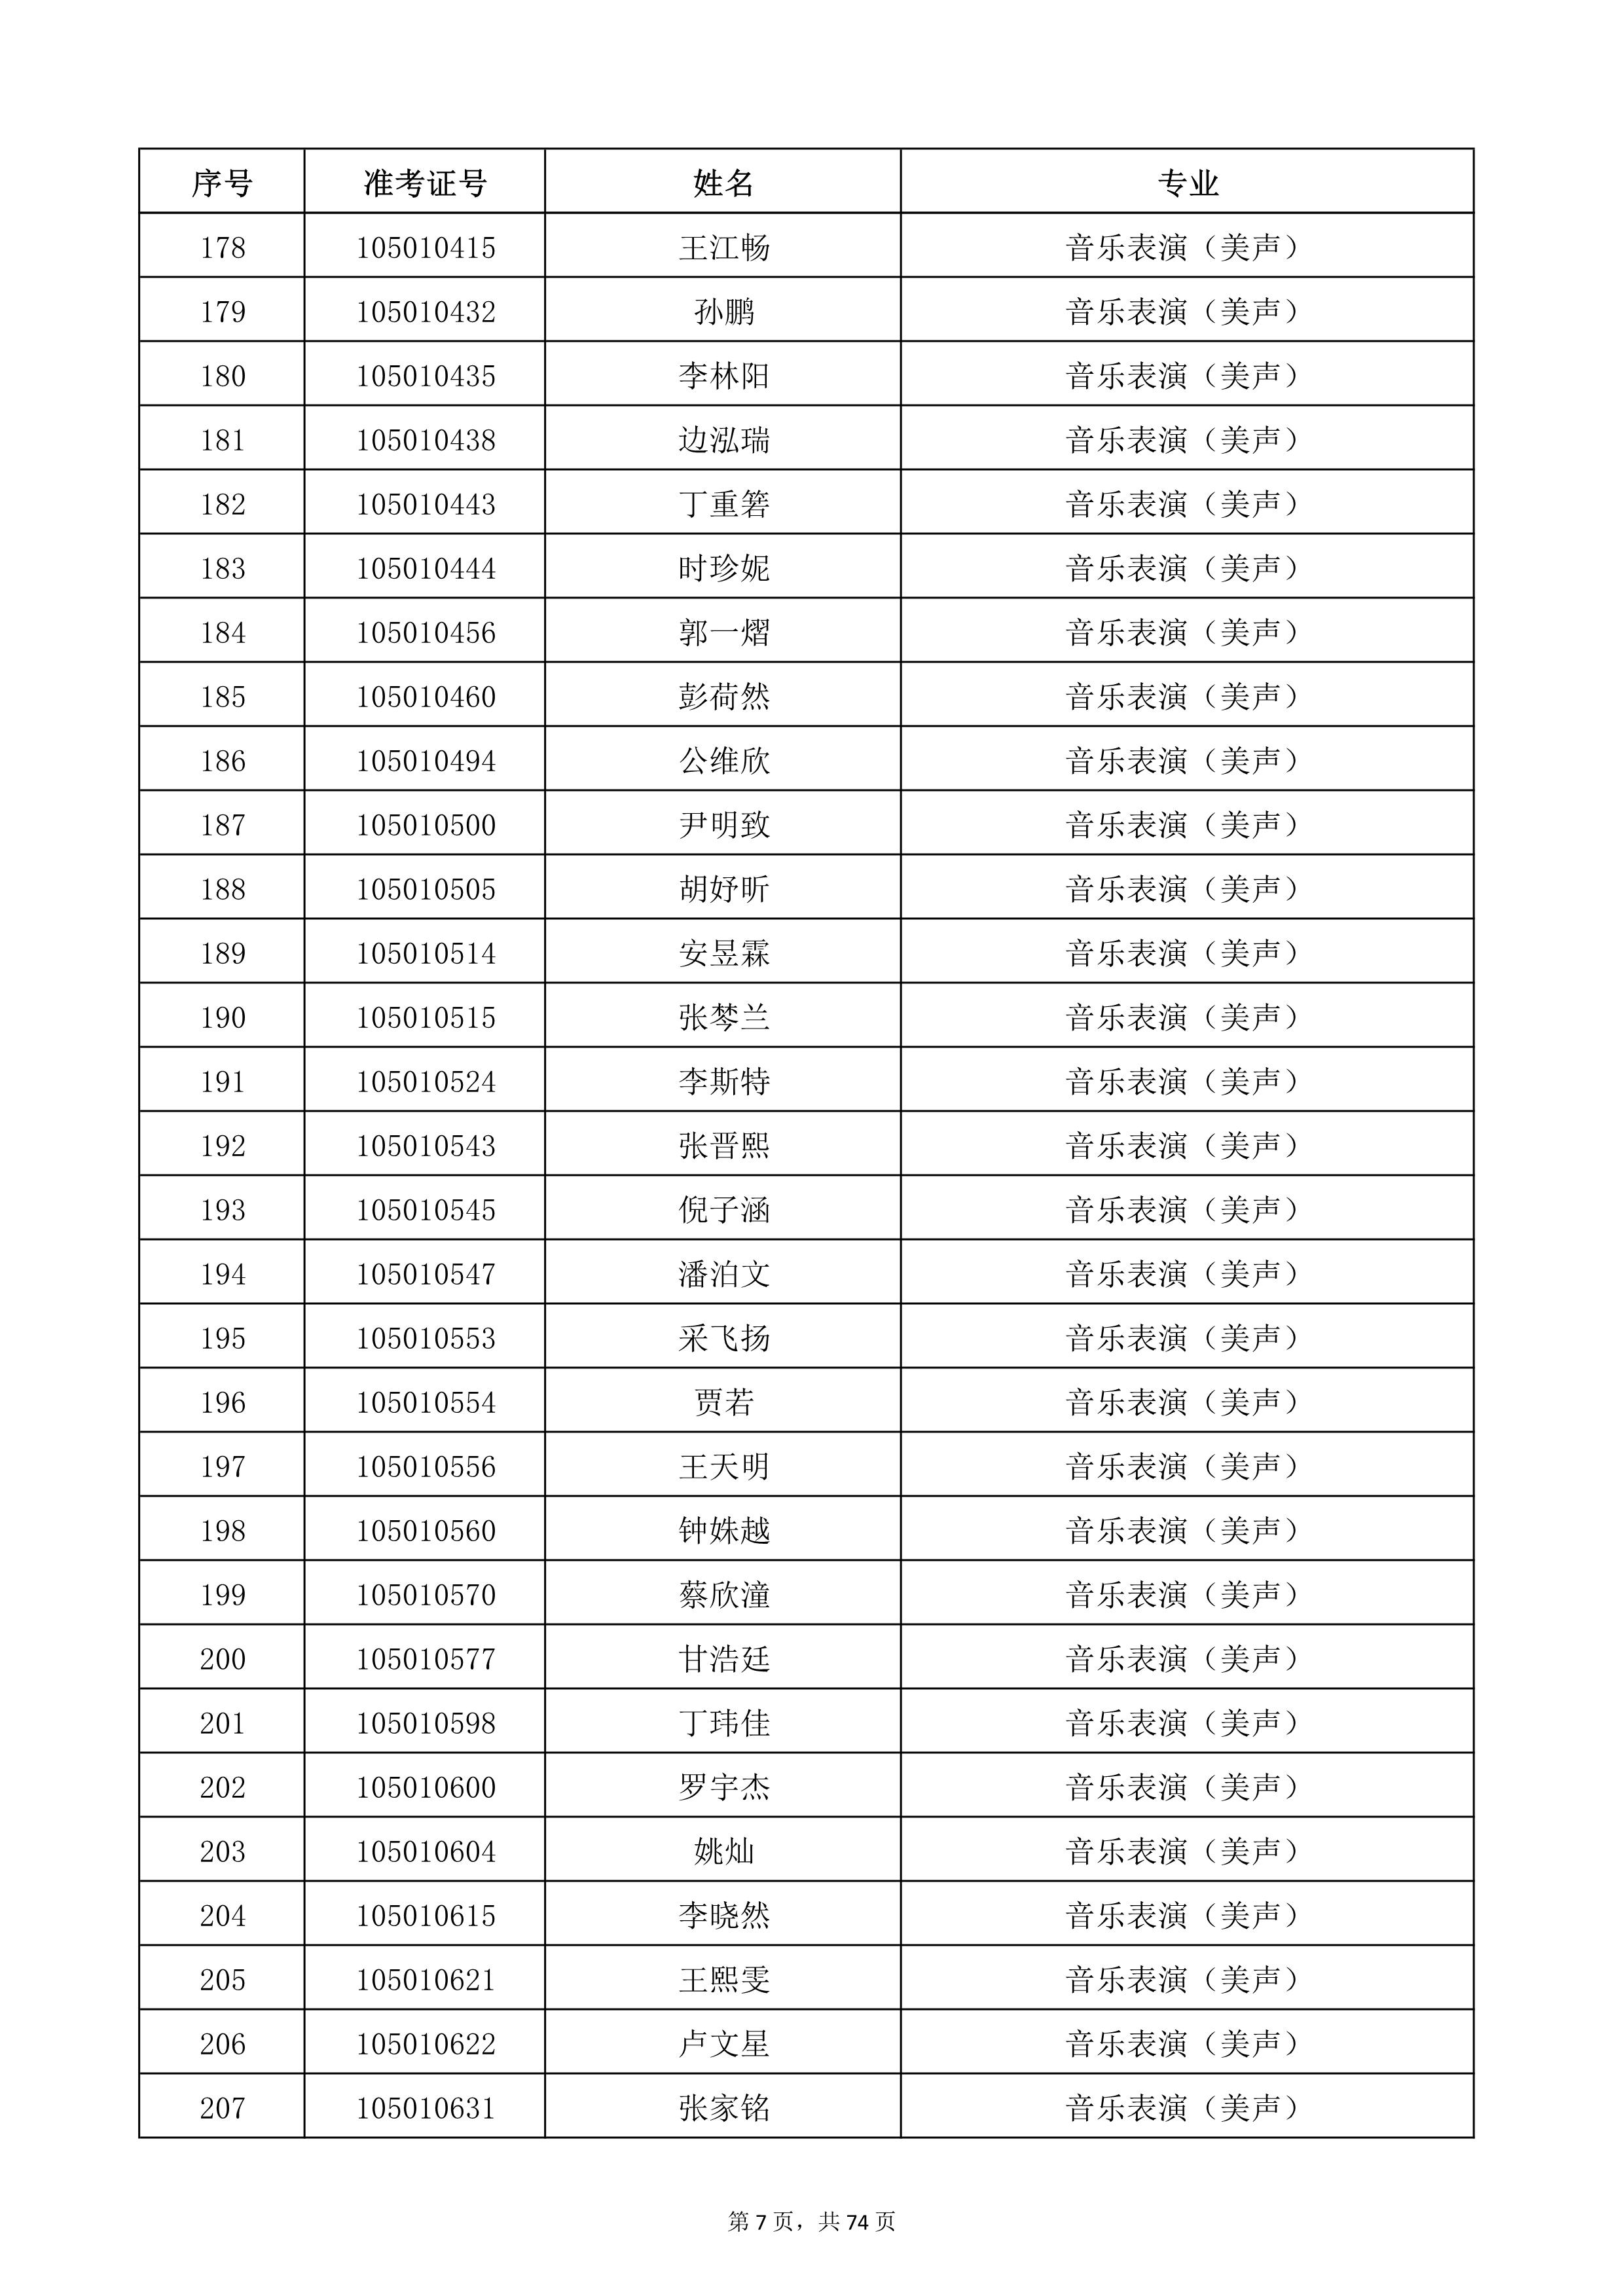 天津音乐学院2022年本科招生考试复试名单_7.jpg